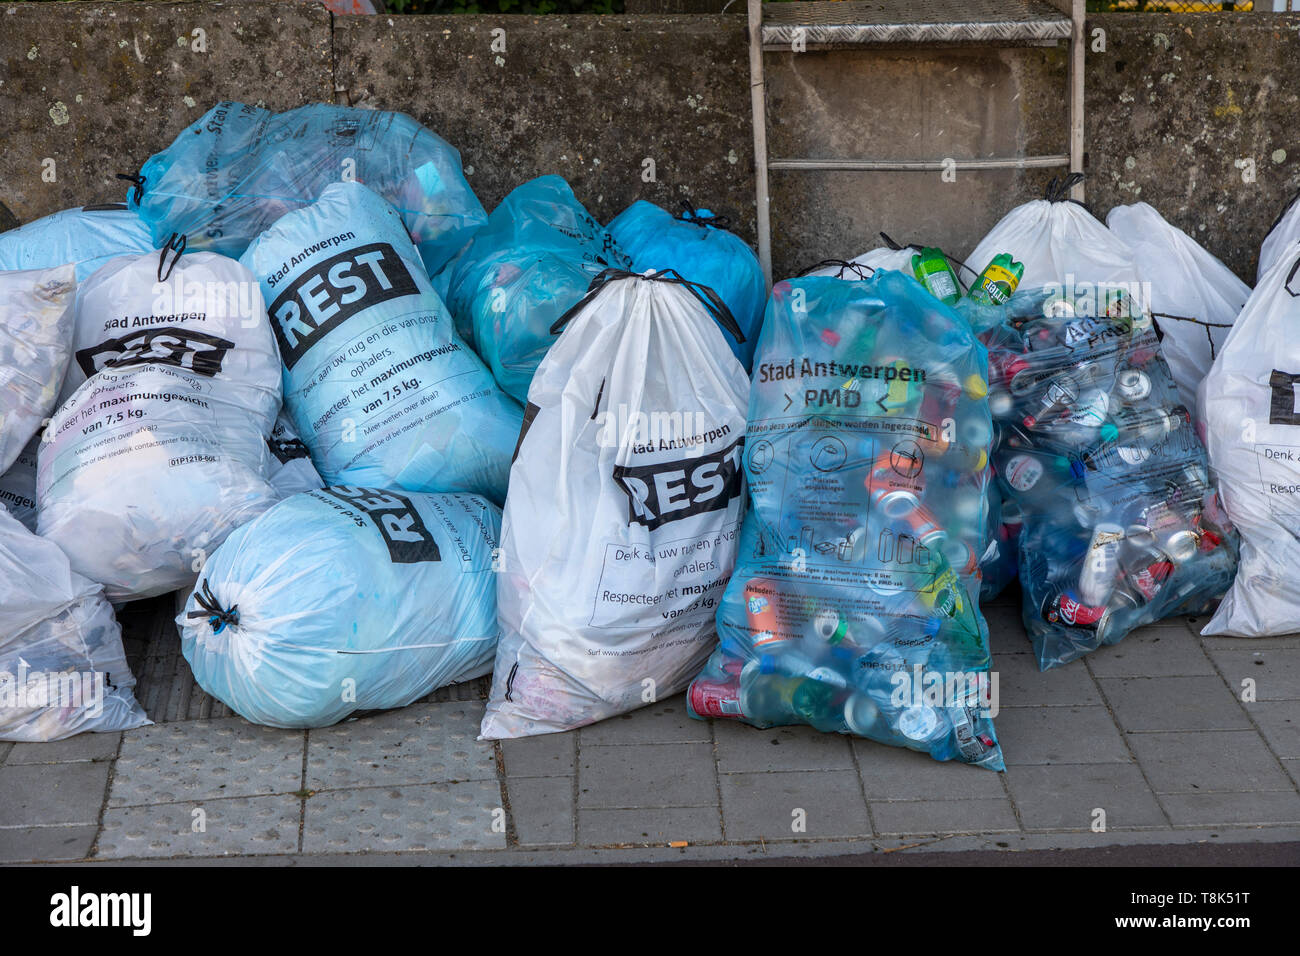 Anversa, centro città, sacchi della spazzatura, rifiuti residui, lattine di alluminio di separazione dei rifiuti, Foto Stock